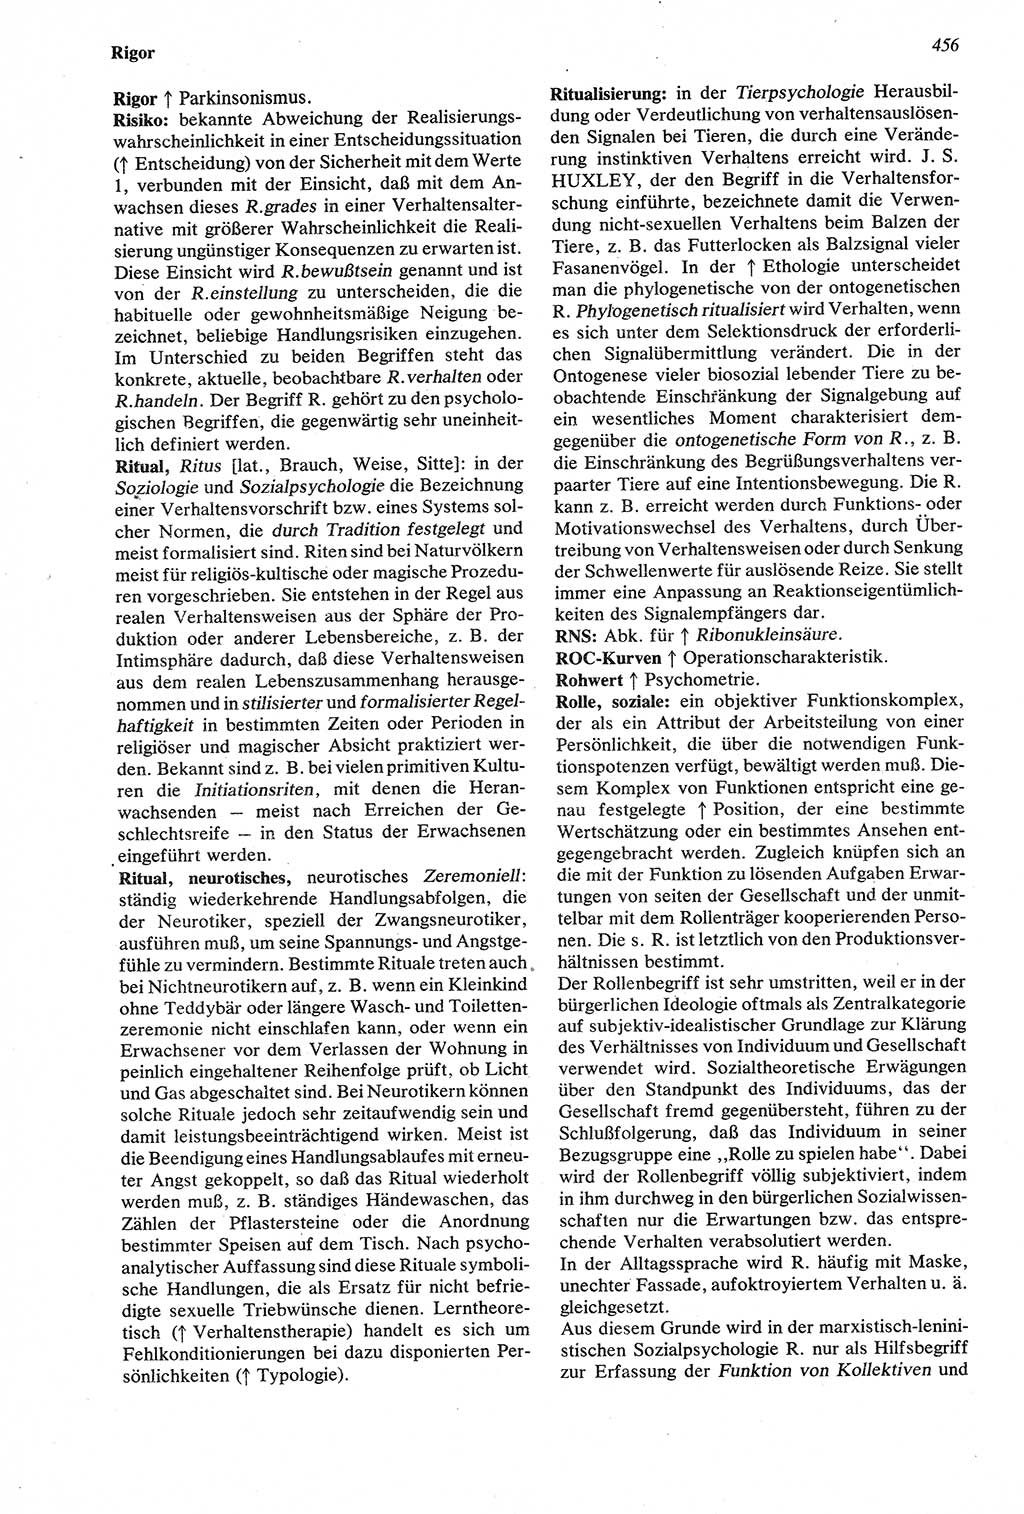 Wörterbuch der Psychologie [Deutsche Demokratische Republik (DDR)] 1976, Seite 456 (Wb. Psych. DDR 1976, S. 456)